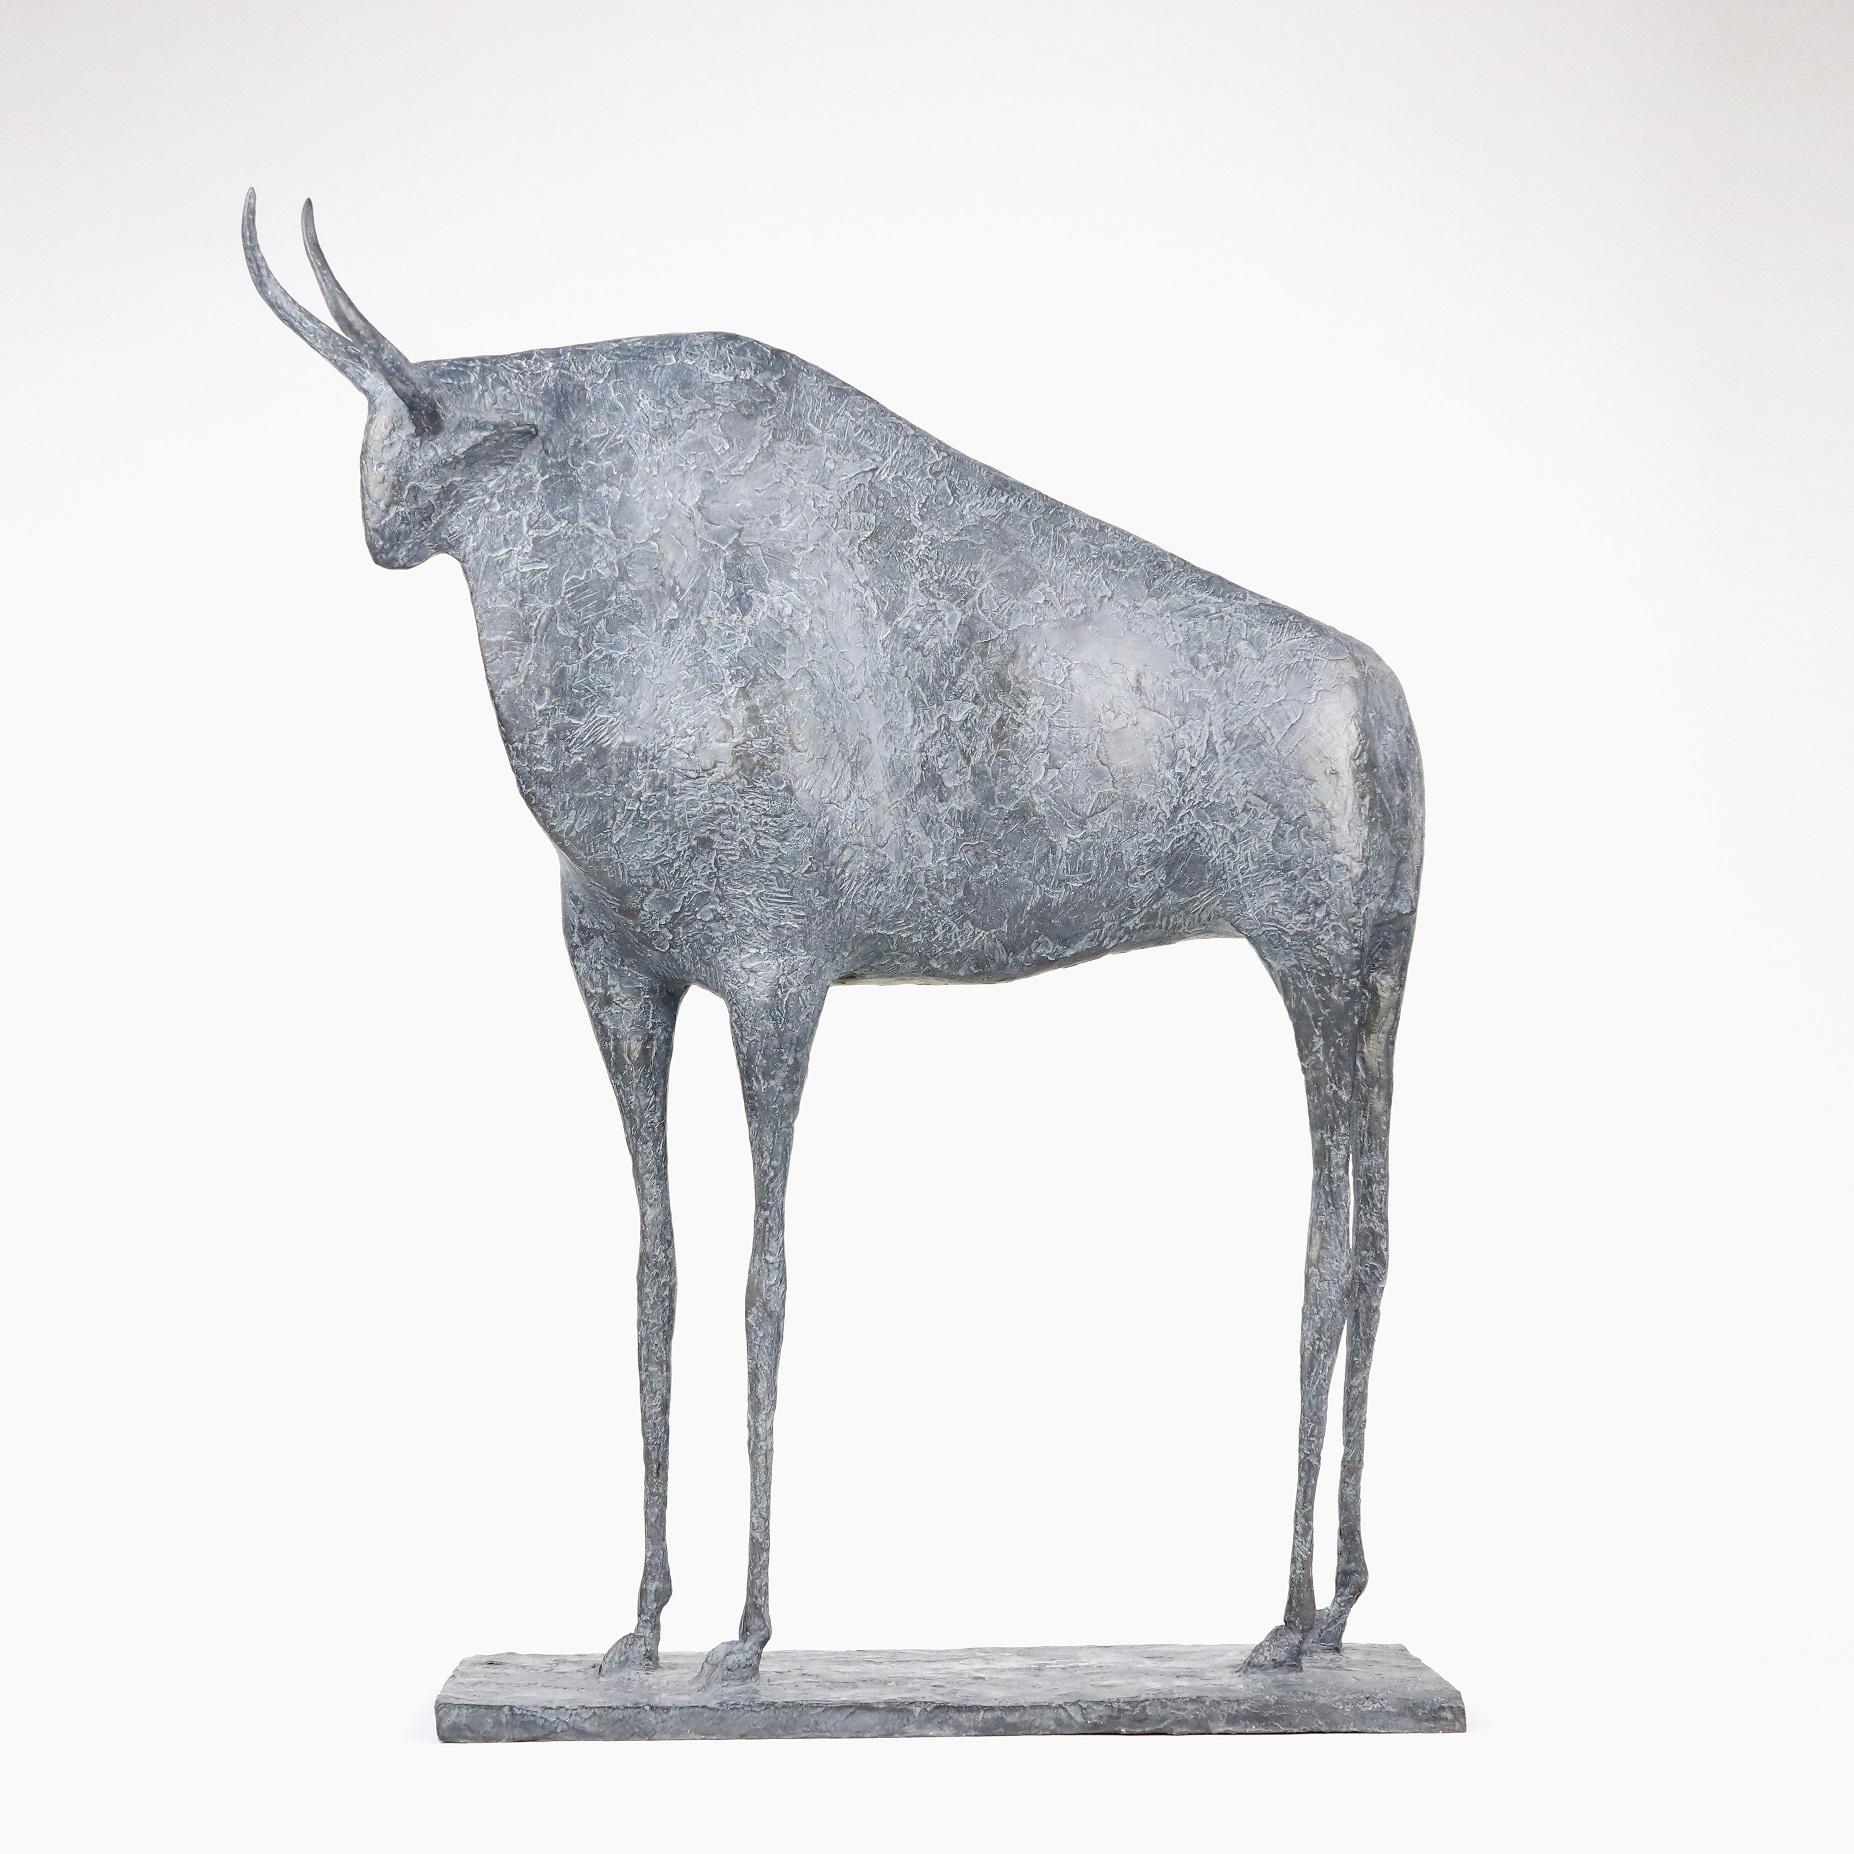 Der Stier VII (Taureau VII) ist eine Skulptur des französischen zeitgenössischen Künstlers Pierre Yermia.
"Der Stier ist das einzige männliche Tier in meinem Bestiarium. Seine ruhige und gelassene Präsenz wird durch seinen massiven Oberkörper